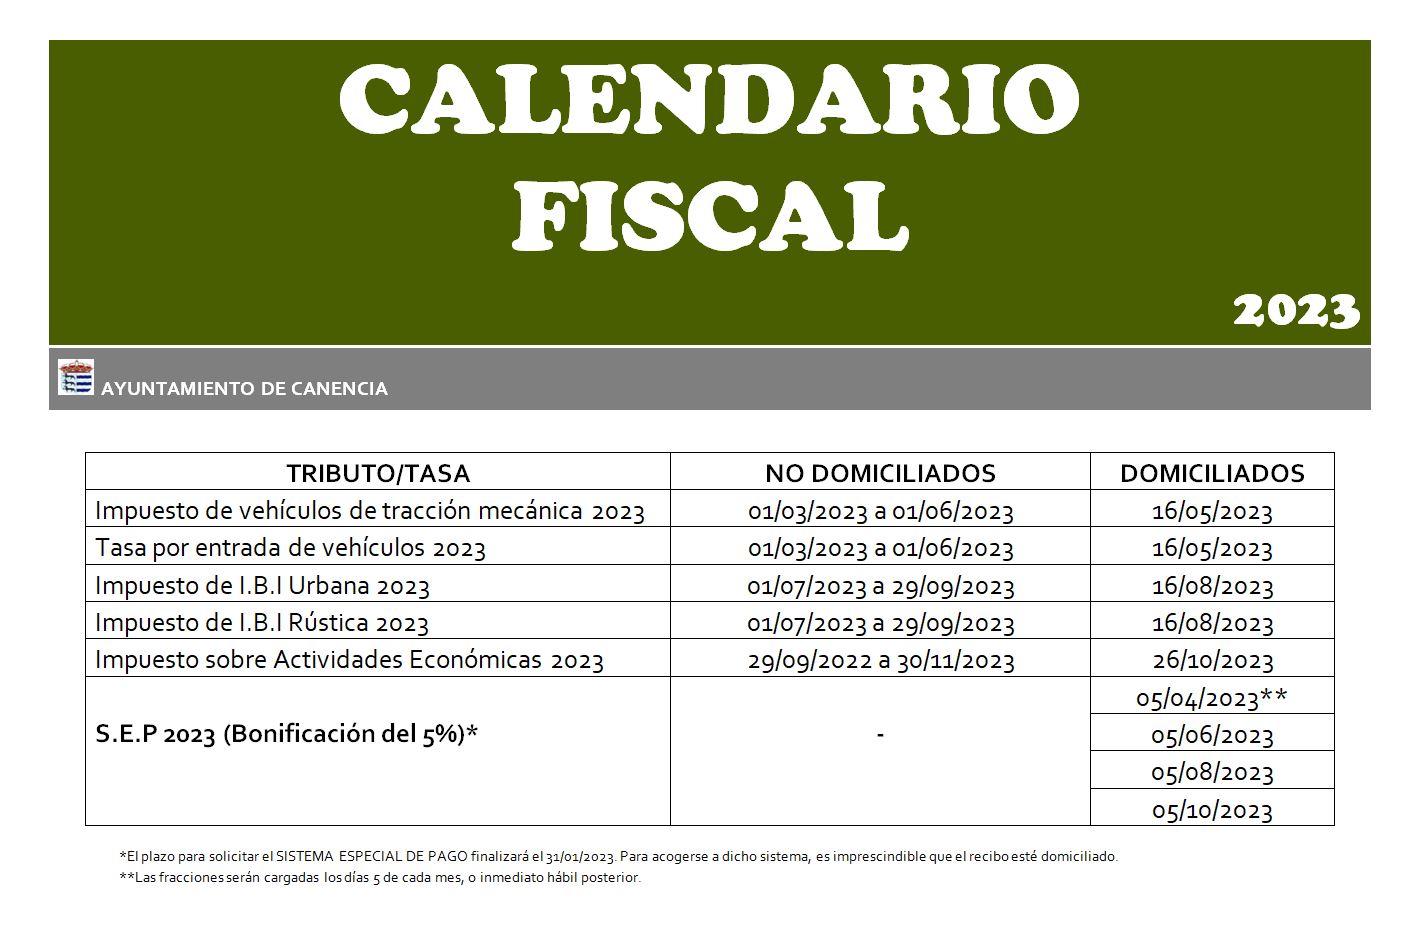 Calendario fiscal 2023